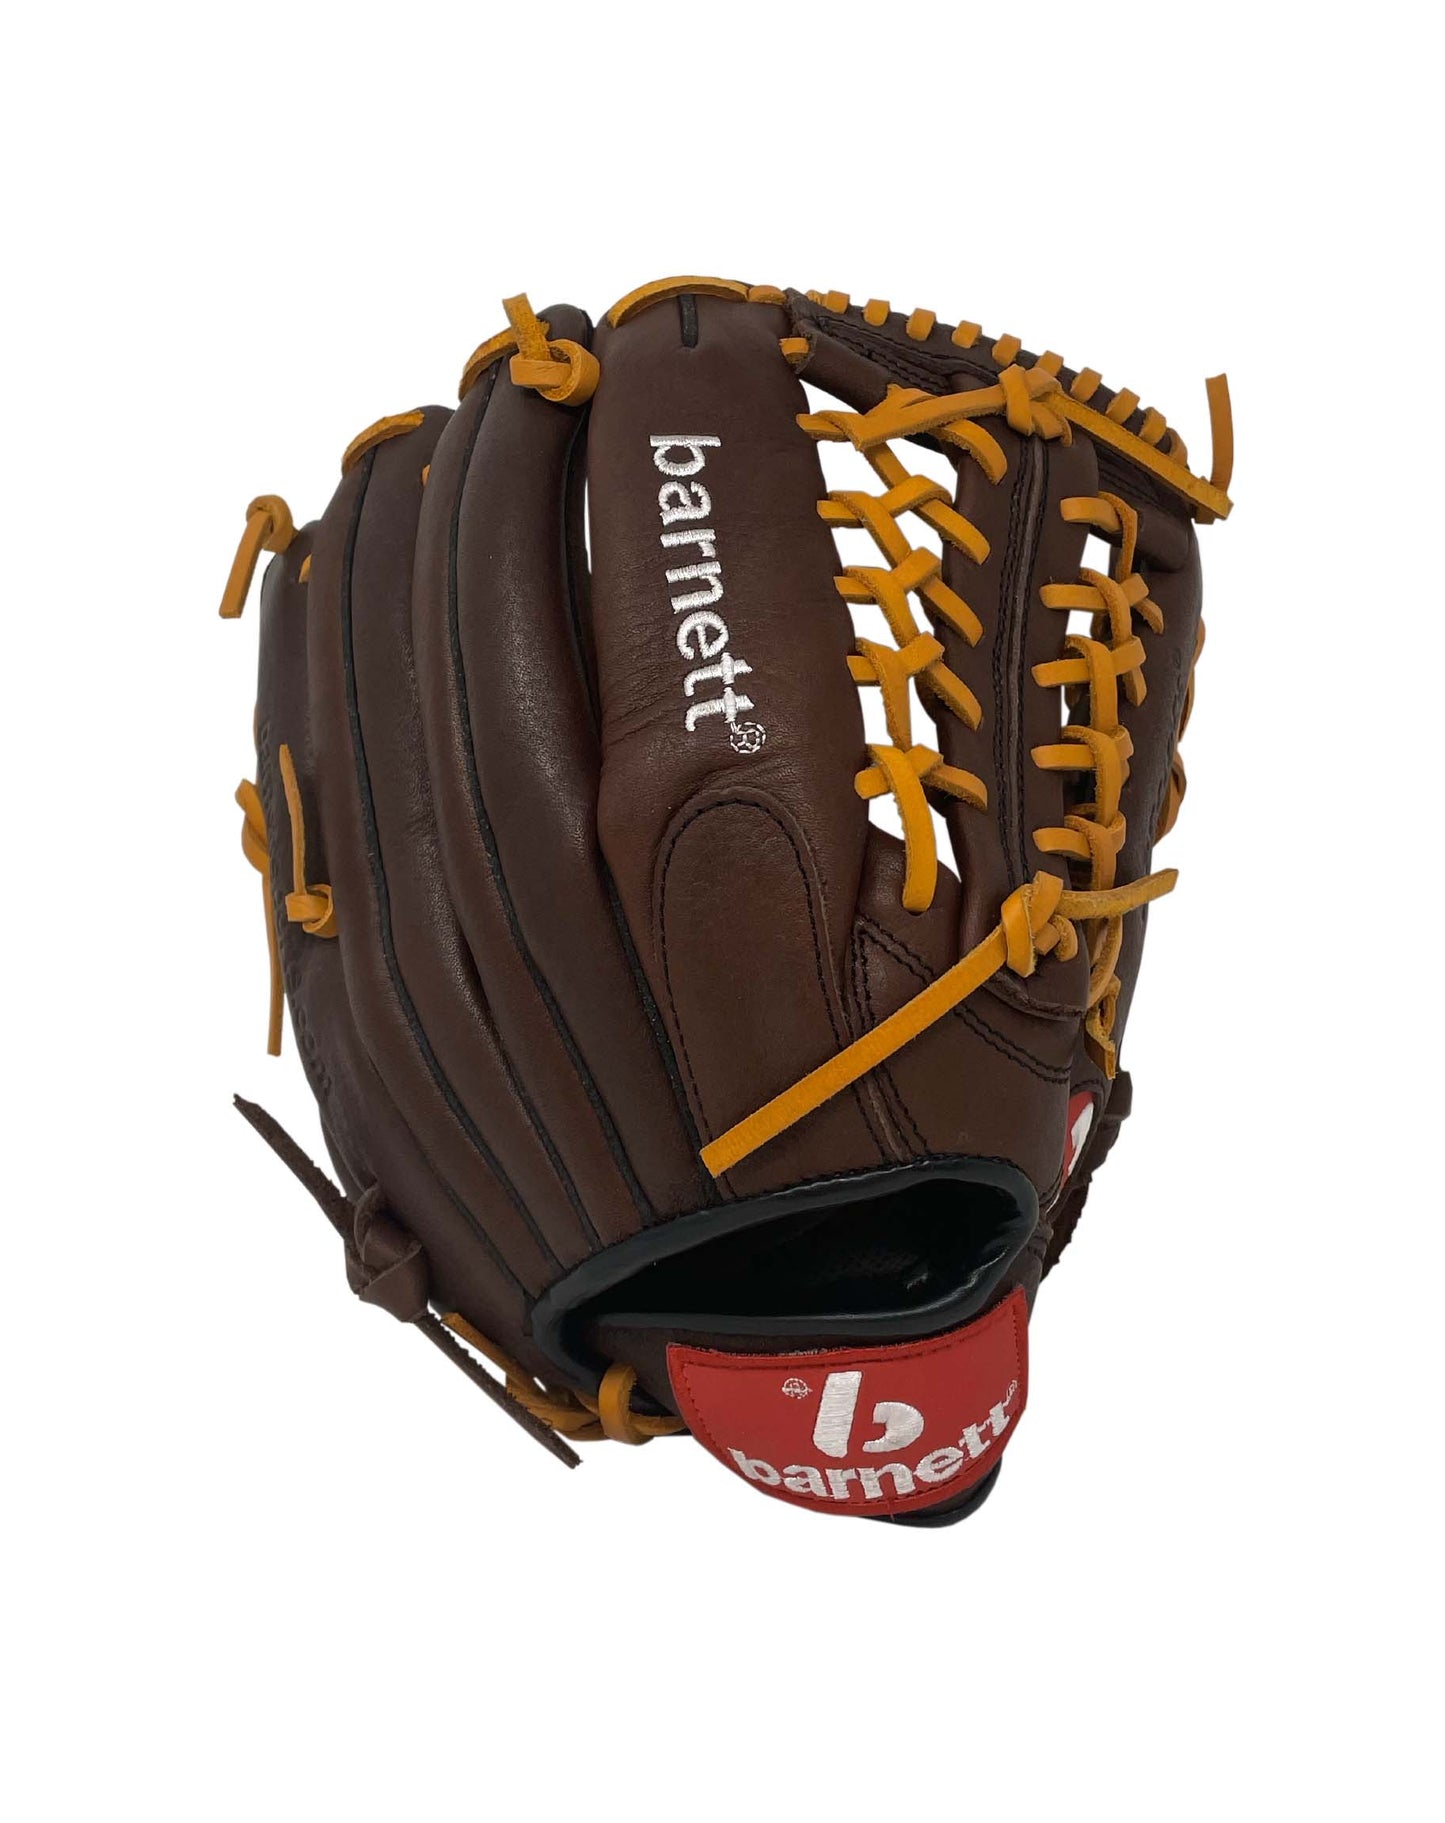 GL-125 Baseball Handschuh, Echtleder, Wettkampf, Outfield & Softball Größe 12,5 (inch), braun